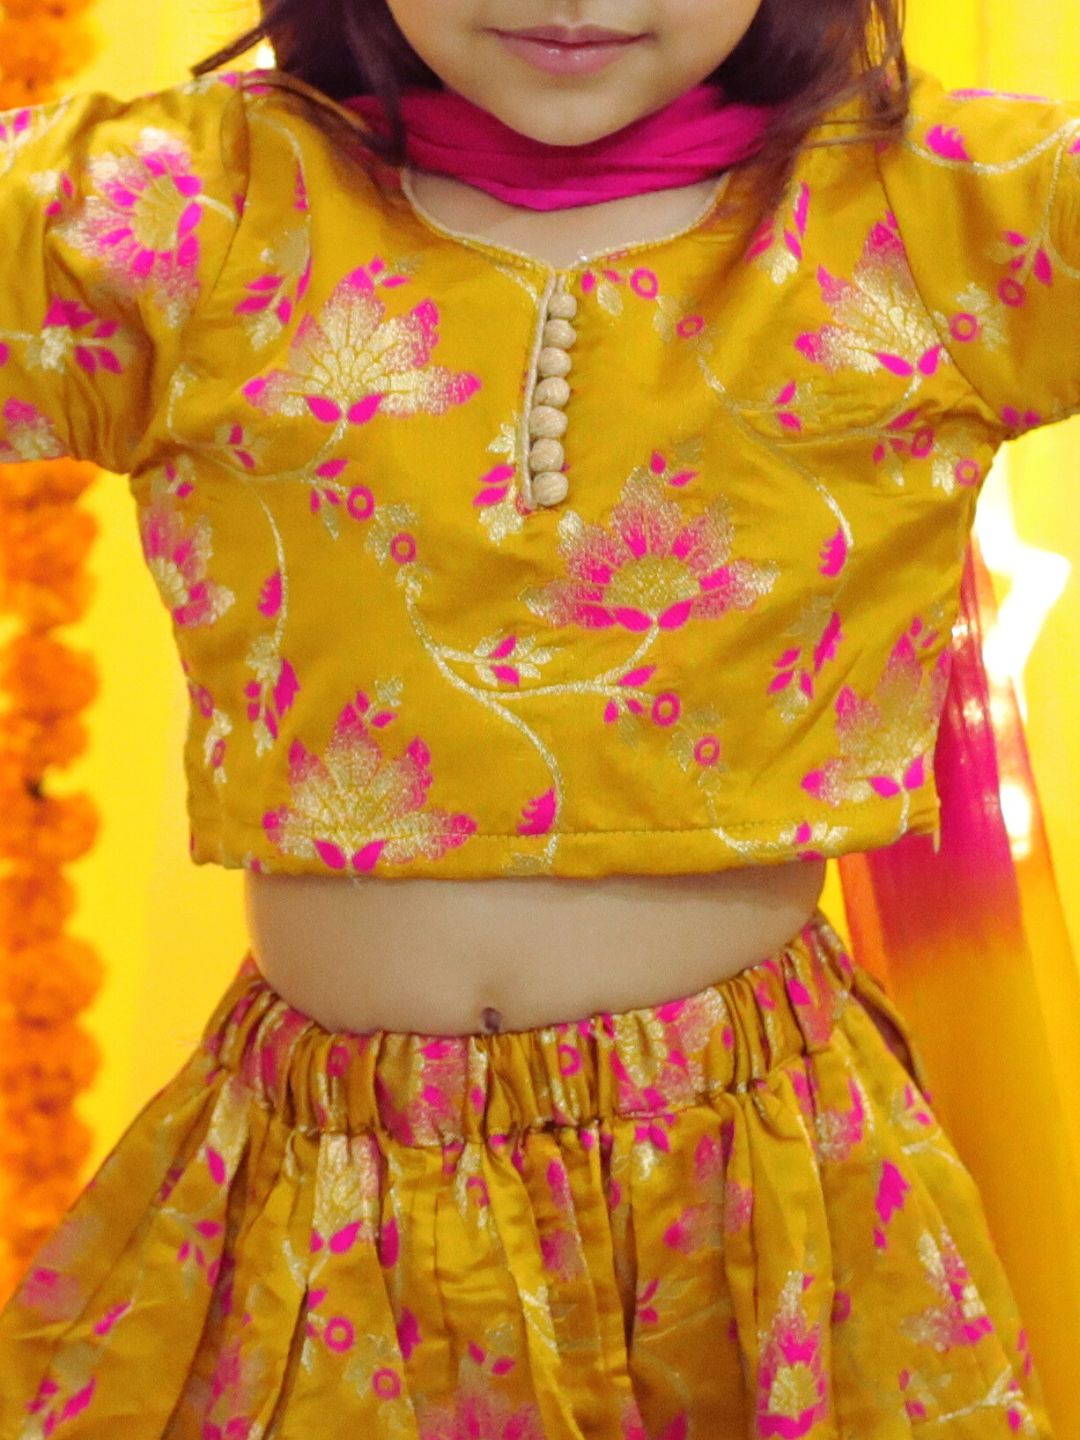 BownBee  Girls Ethic Traditional Indian Festive  Jacquard Choli Lehenga Choli with Dupatta- Yellow